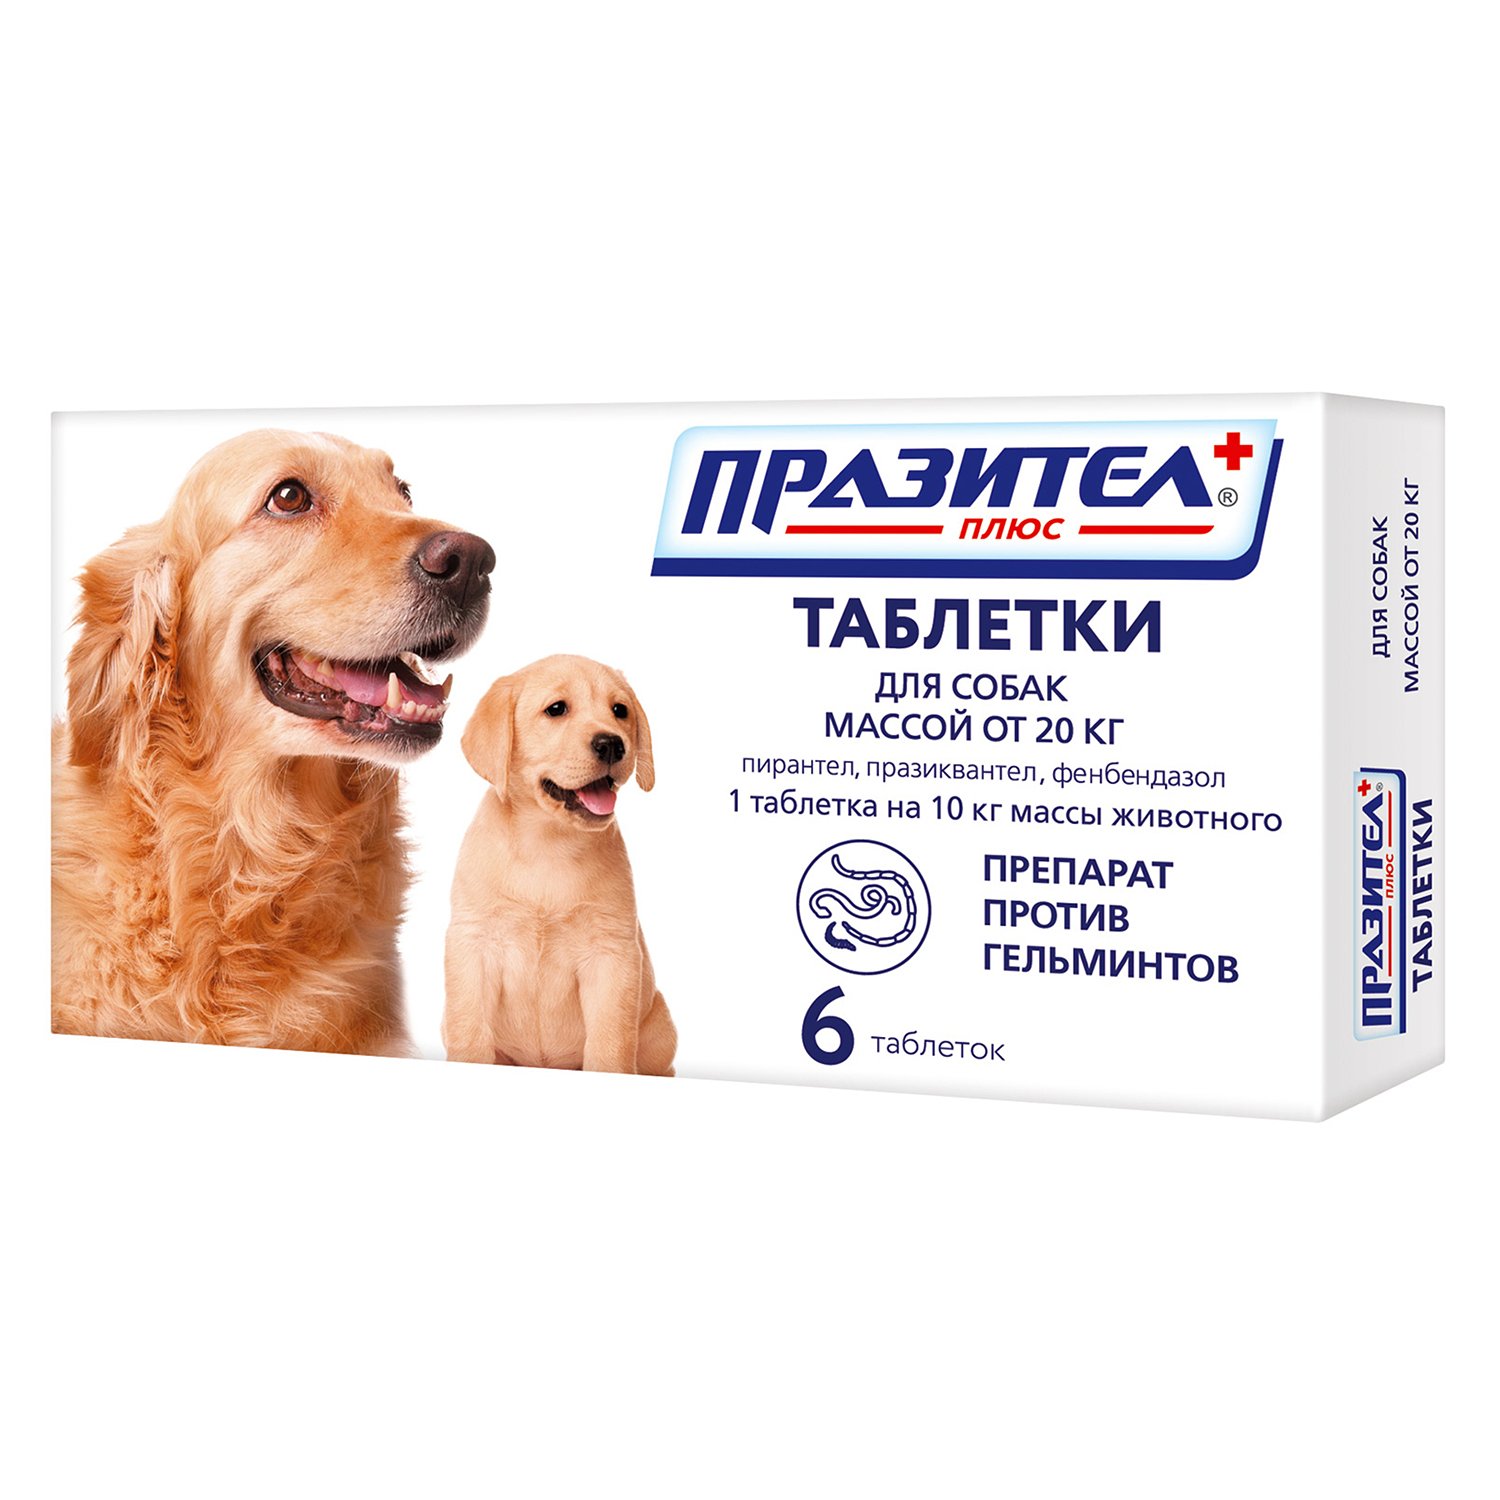 Препарат противопаразитный для собак и щенков Астрафарм Празител плюс средних и крупных пород 6таблеток - фото 1